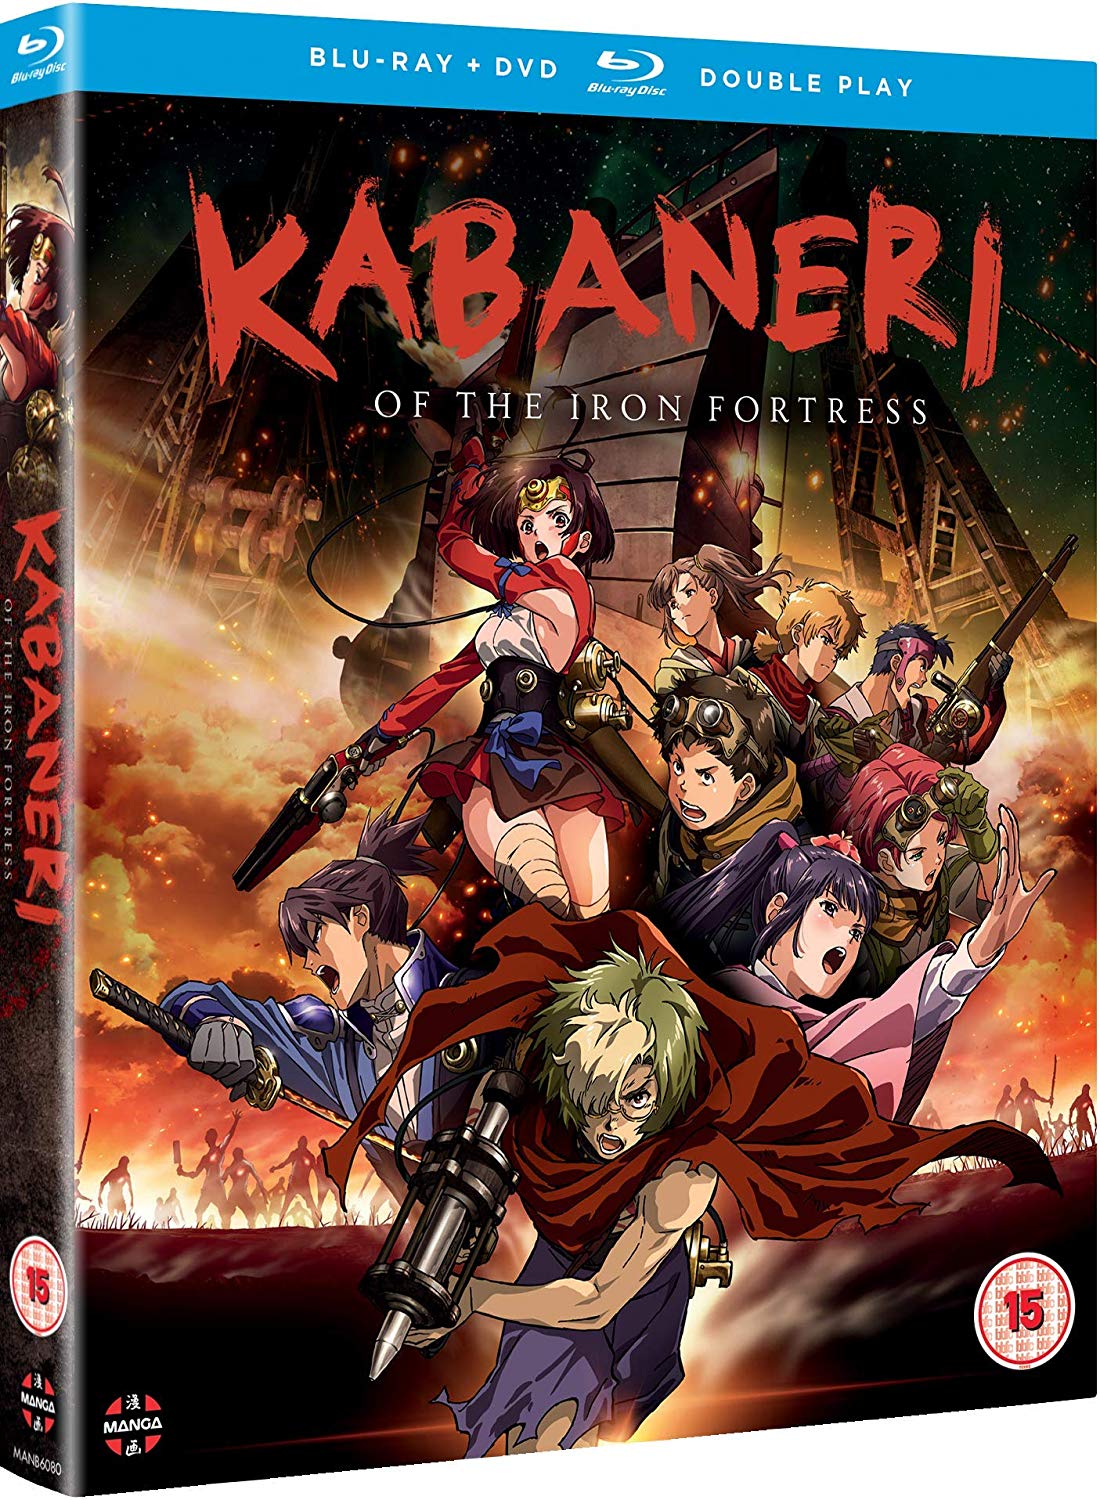 Kabaneri of the iron fortress manga